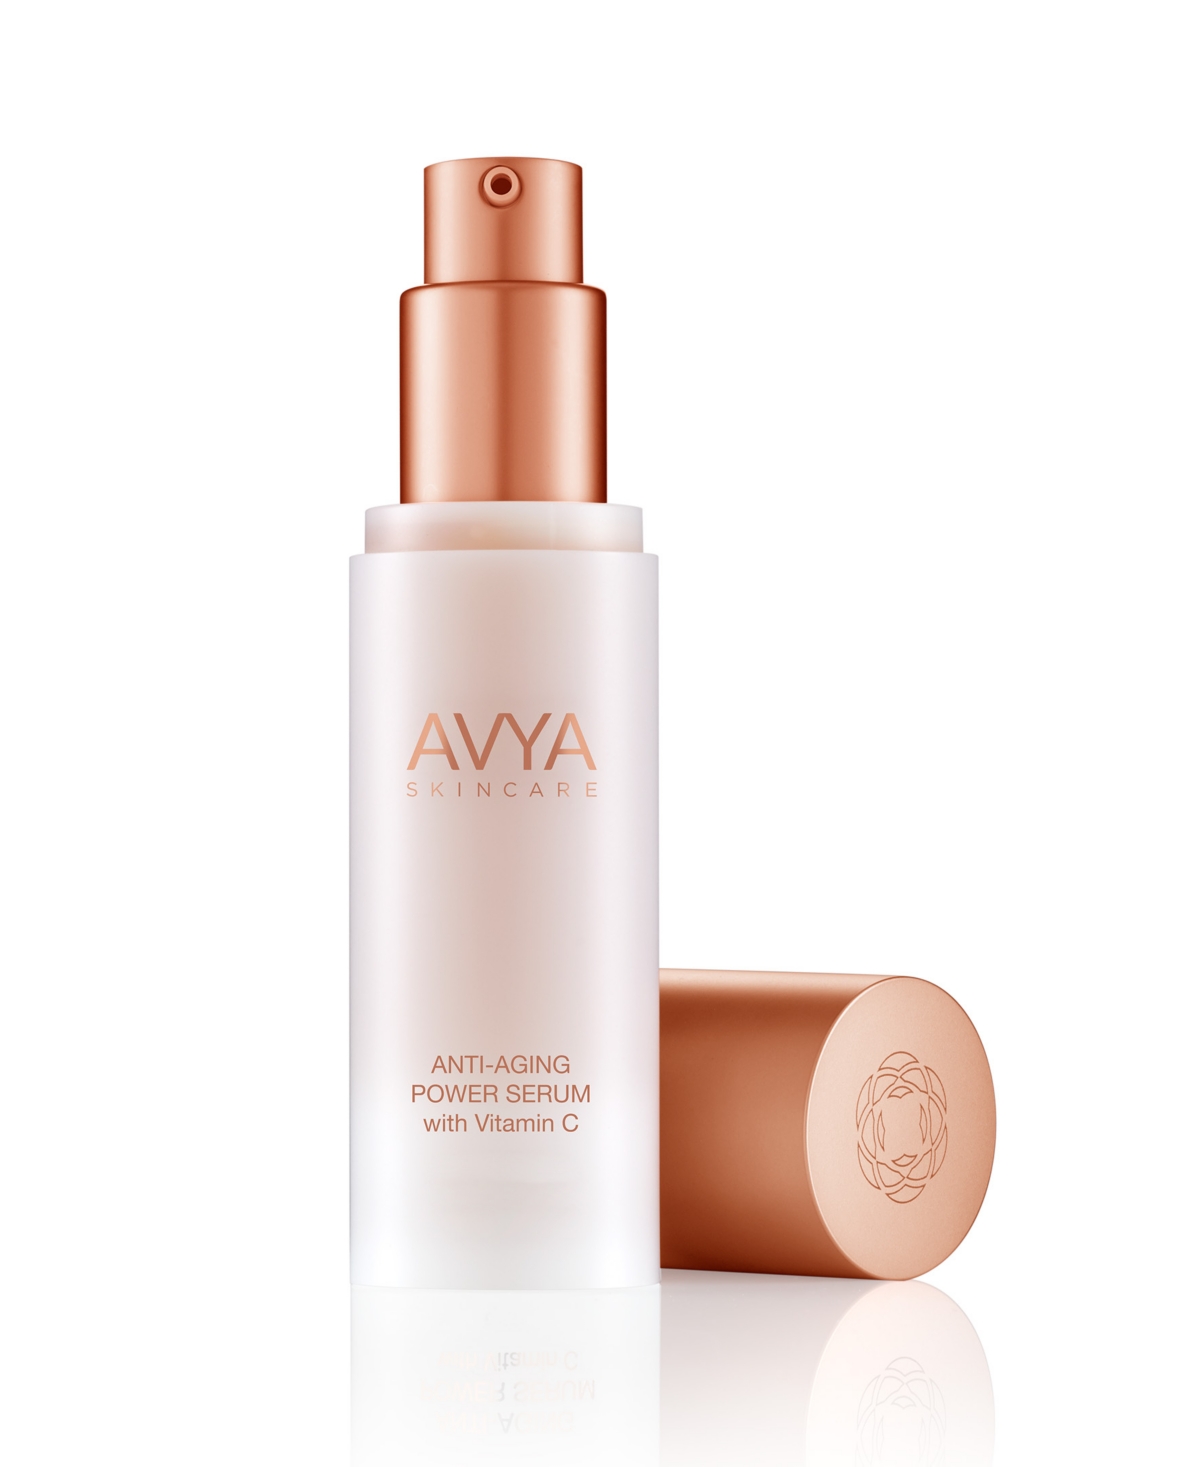 Avya Skincare Anti-Aging Power Serum with Vitamin C